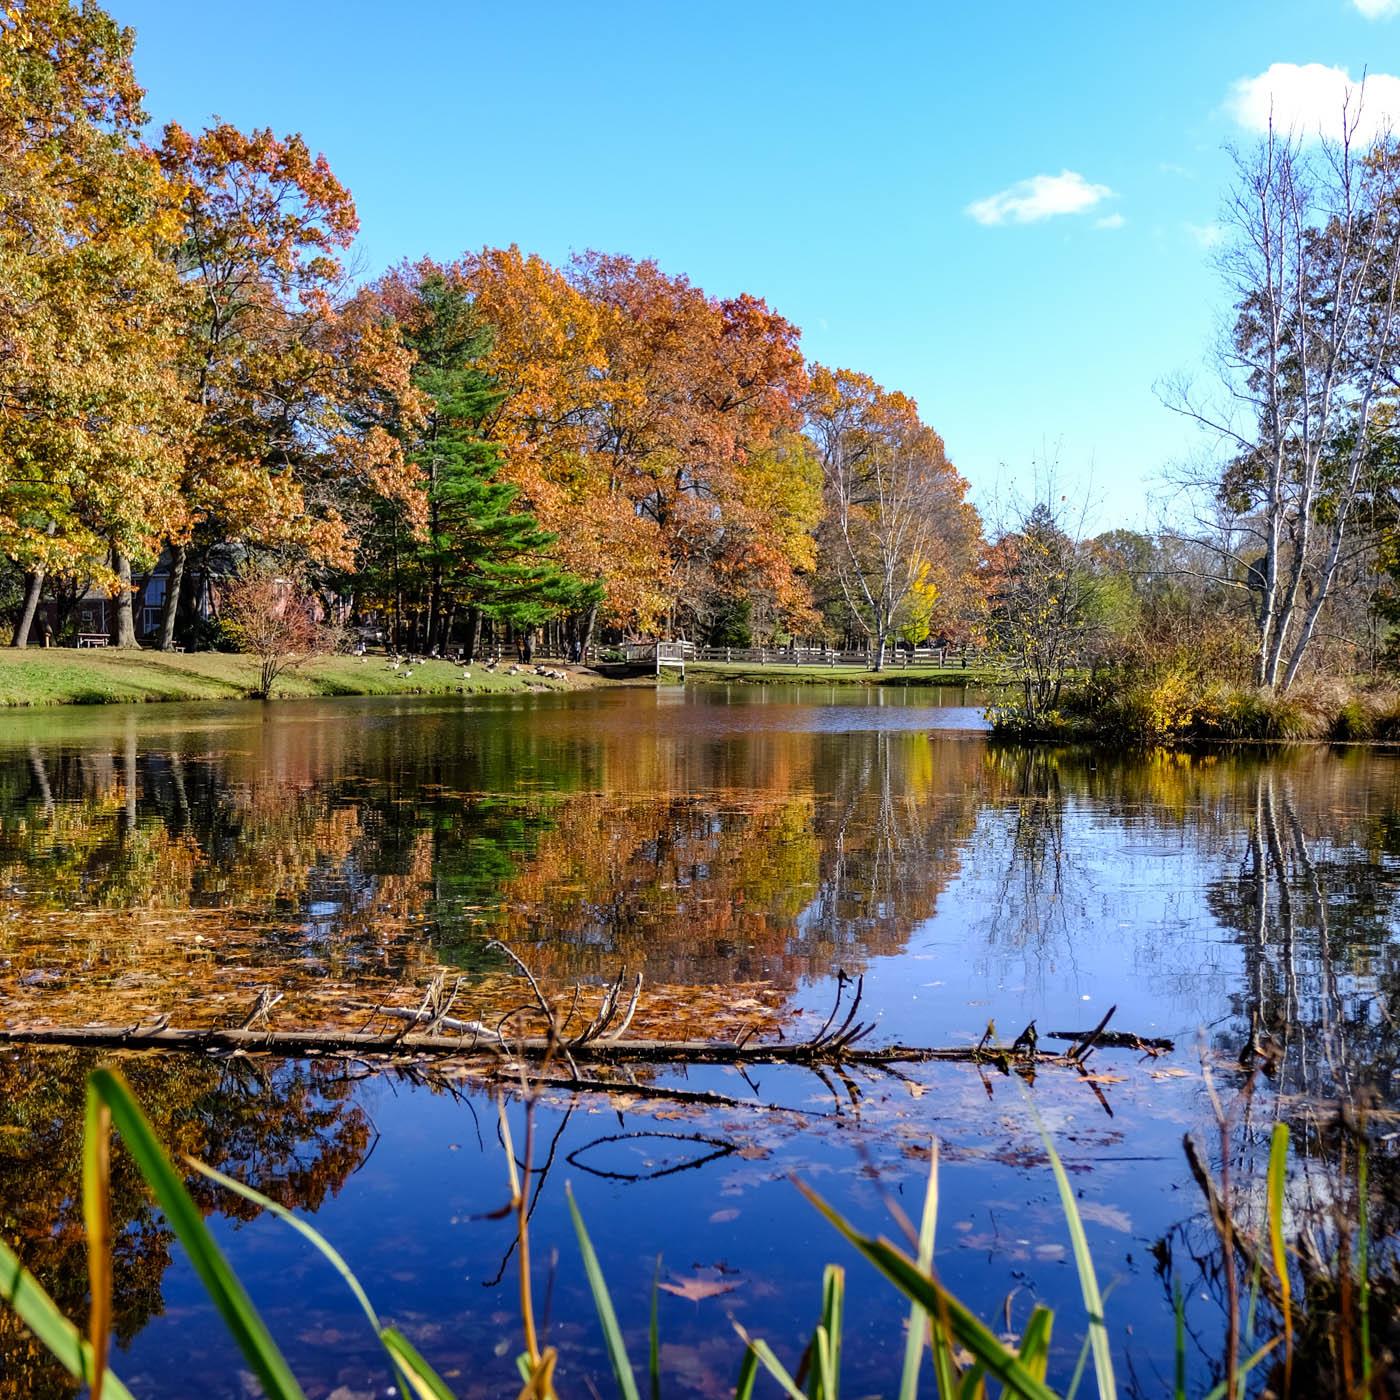 Endicott park pond in fall